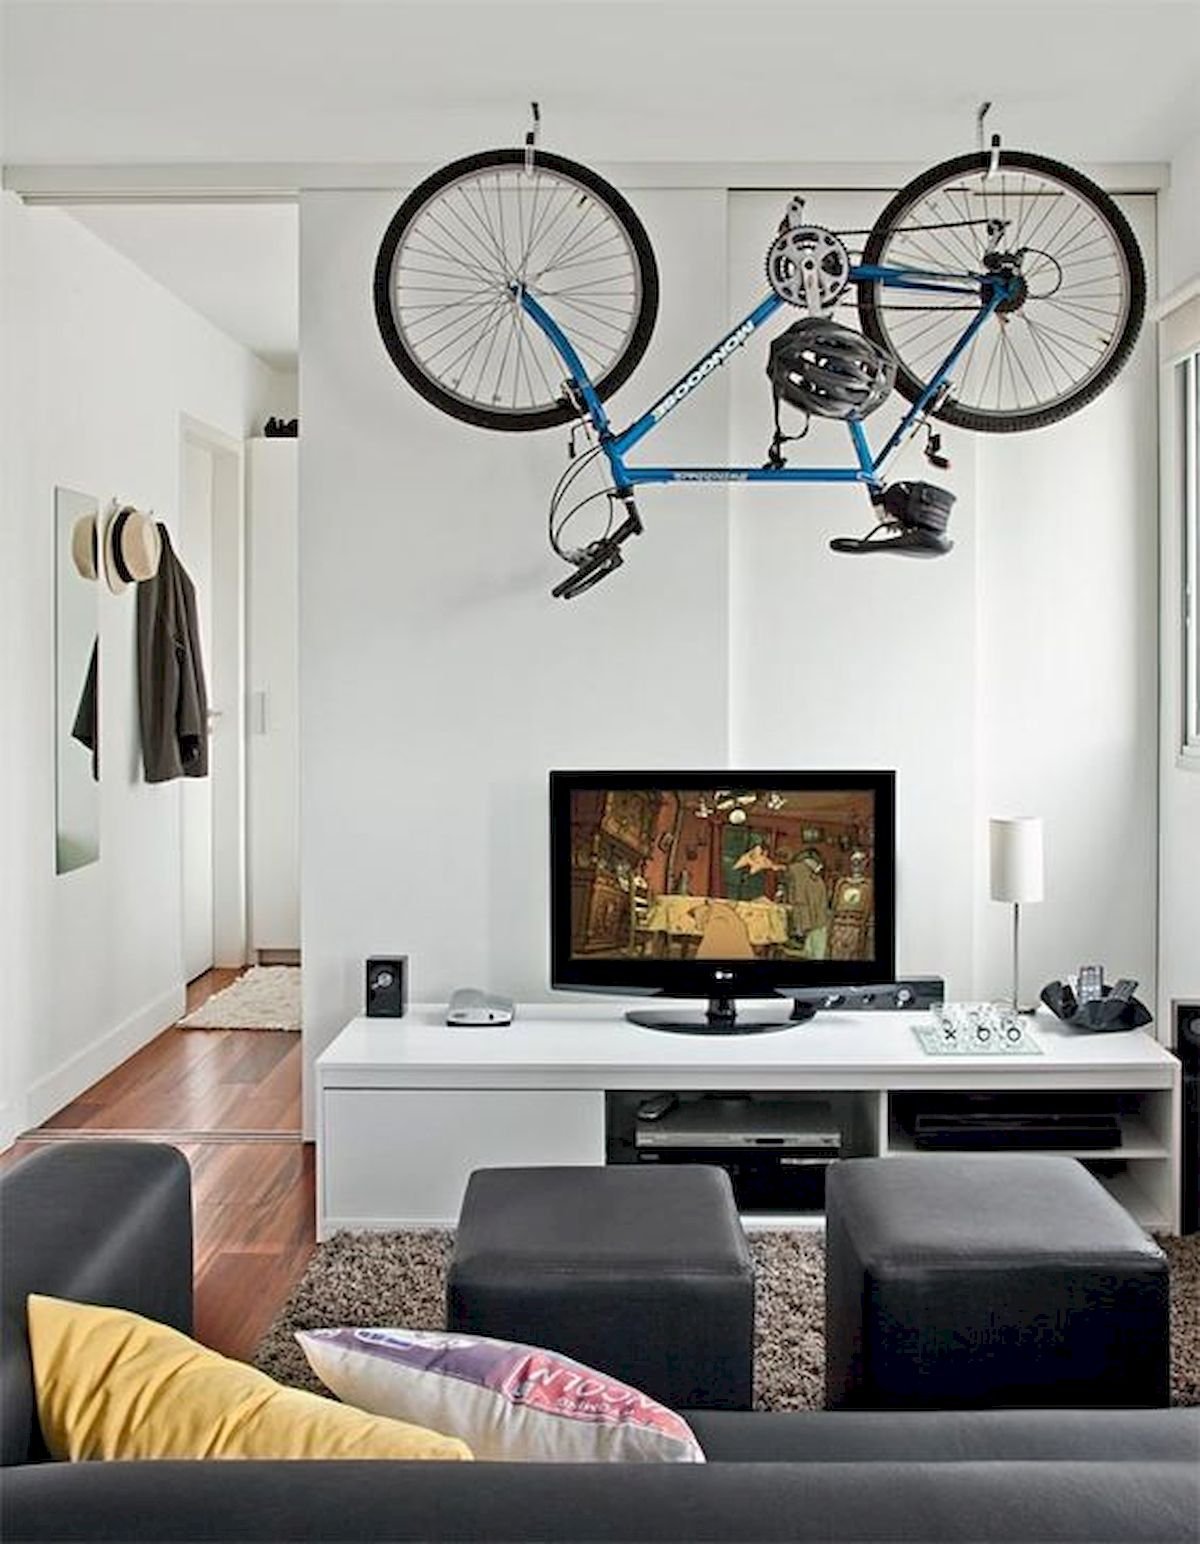 Можно ставить велосипед на. Велосипед в интерьере. Хранение велосипедов. Велосипед в интерьере квартиры. Велосипед на стене в интерьере.